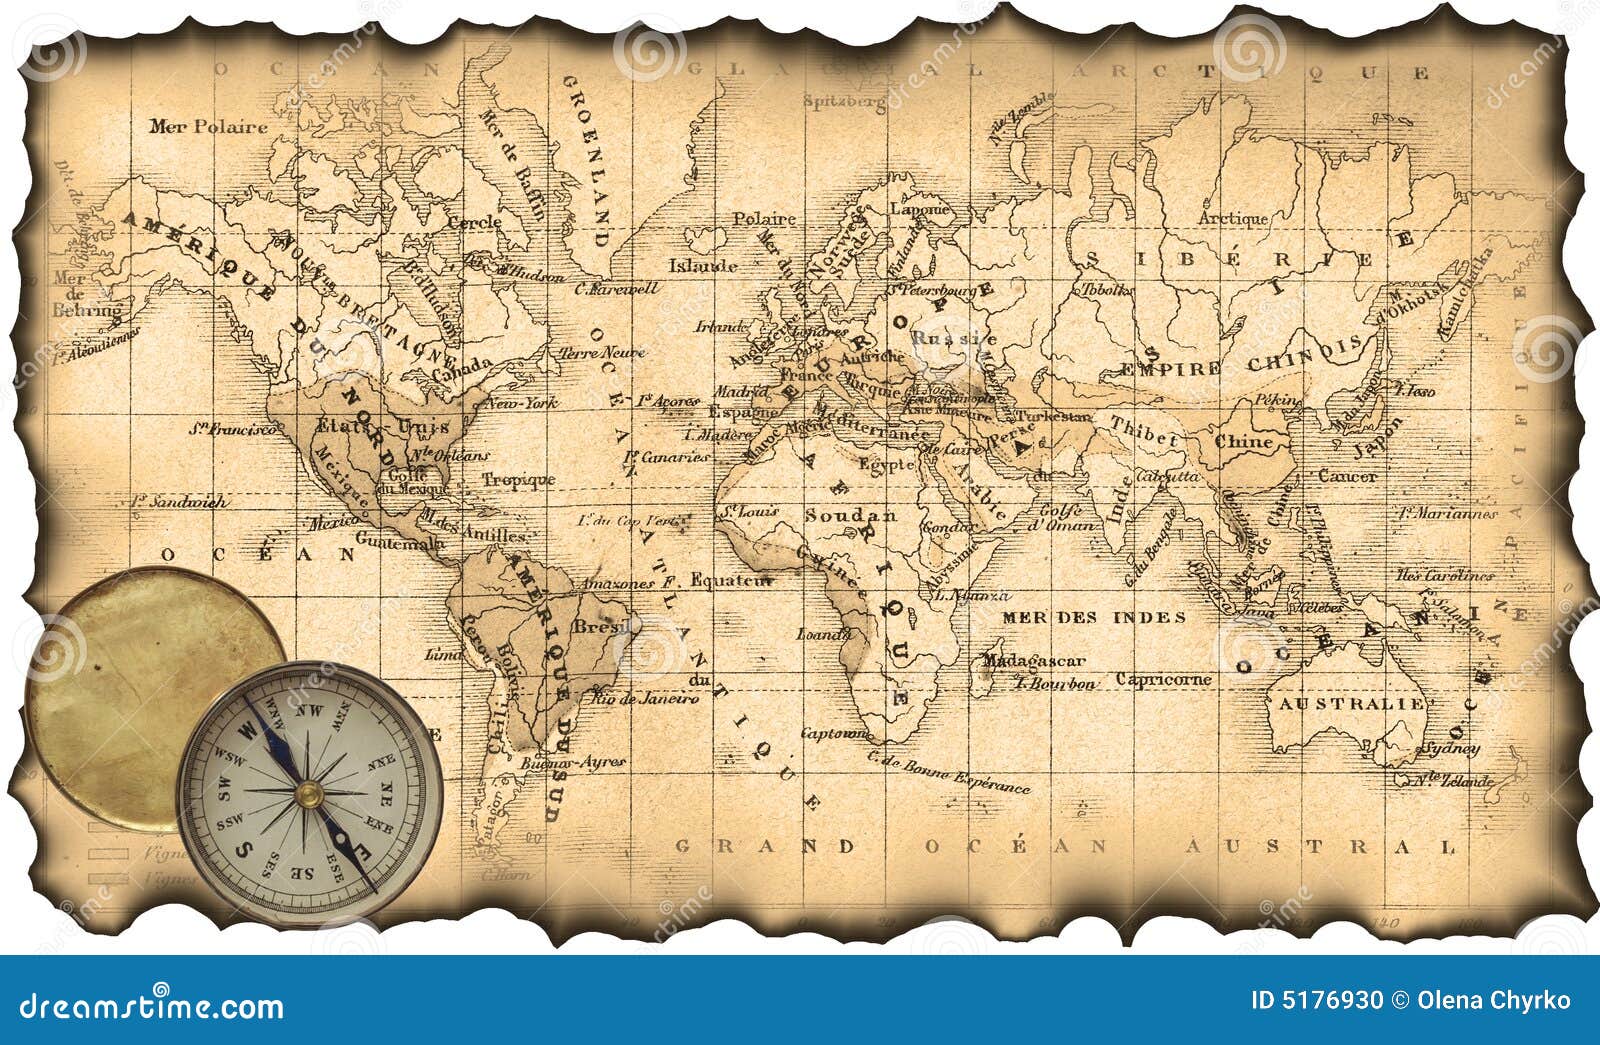 ancient-map-world-compass-5176930.jpg